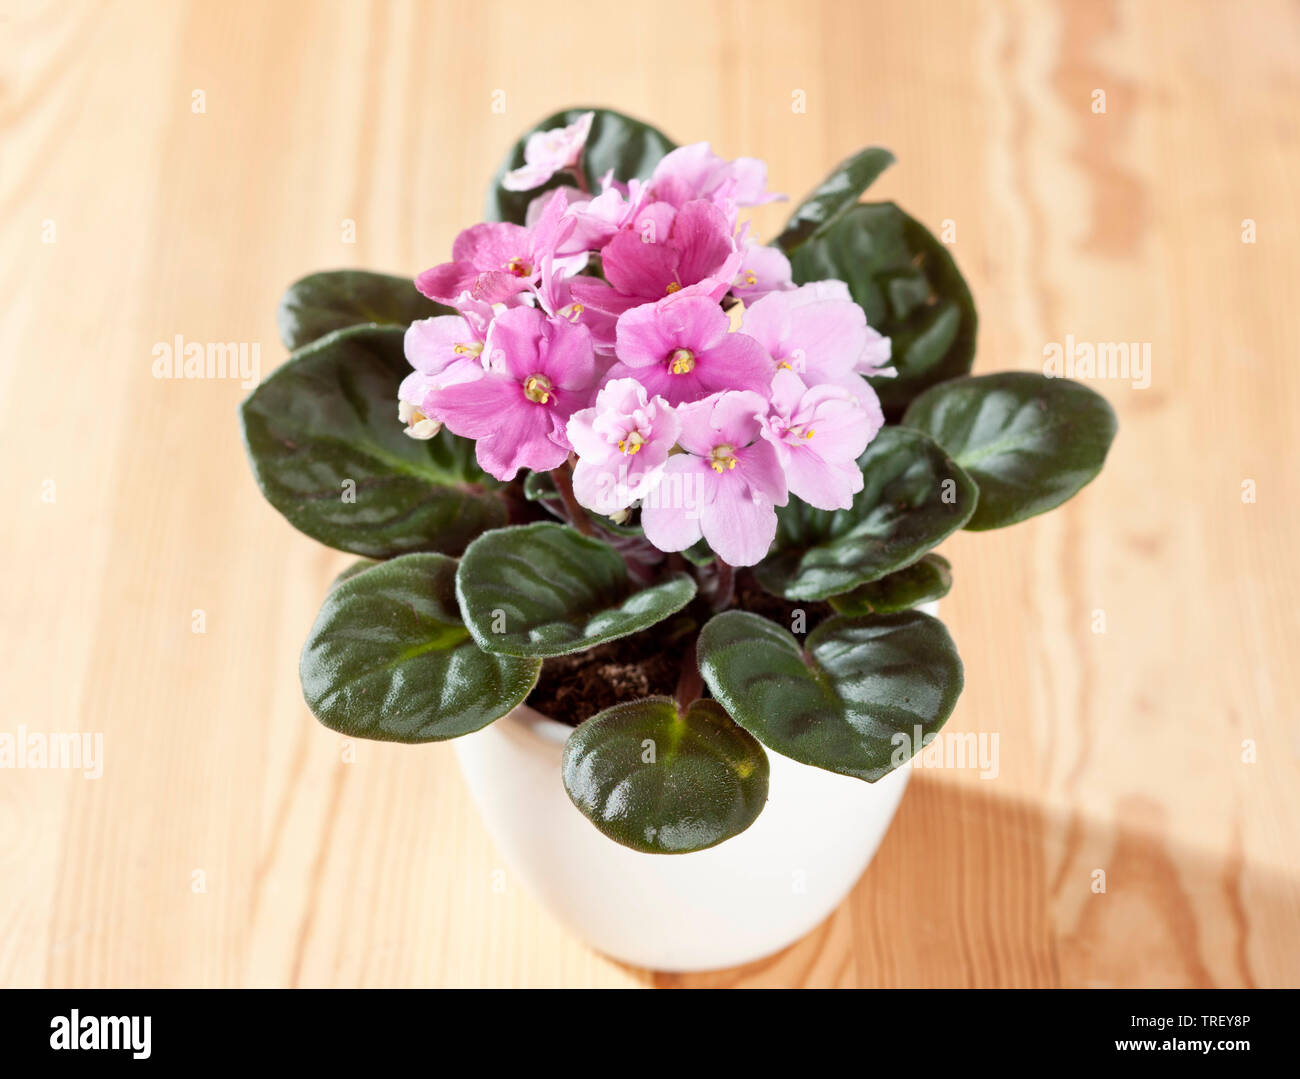 Saintpaulia, la violette africaine (Saintpaulia ionantha-Hybride), en pot  plante à fleurs roses sur une table en bois. Allemagne Photo Stock - Alamy